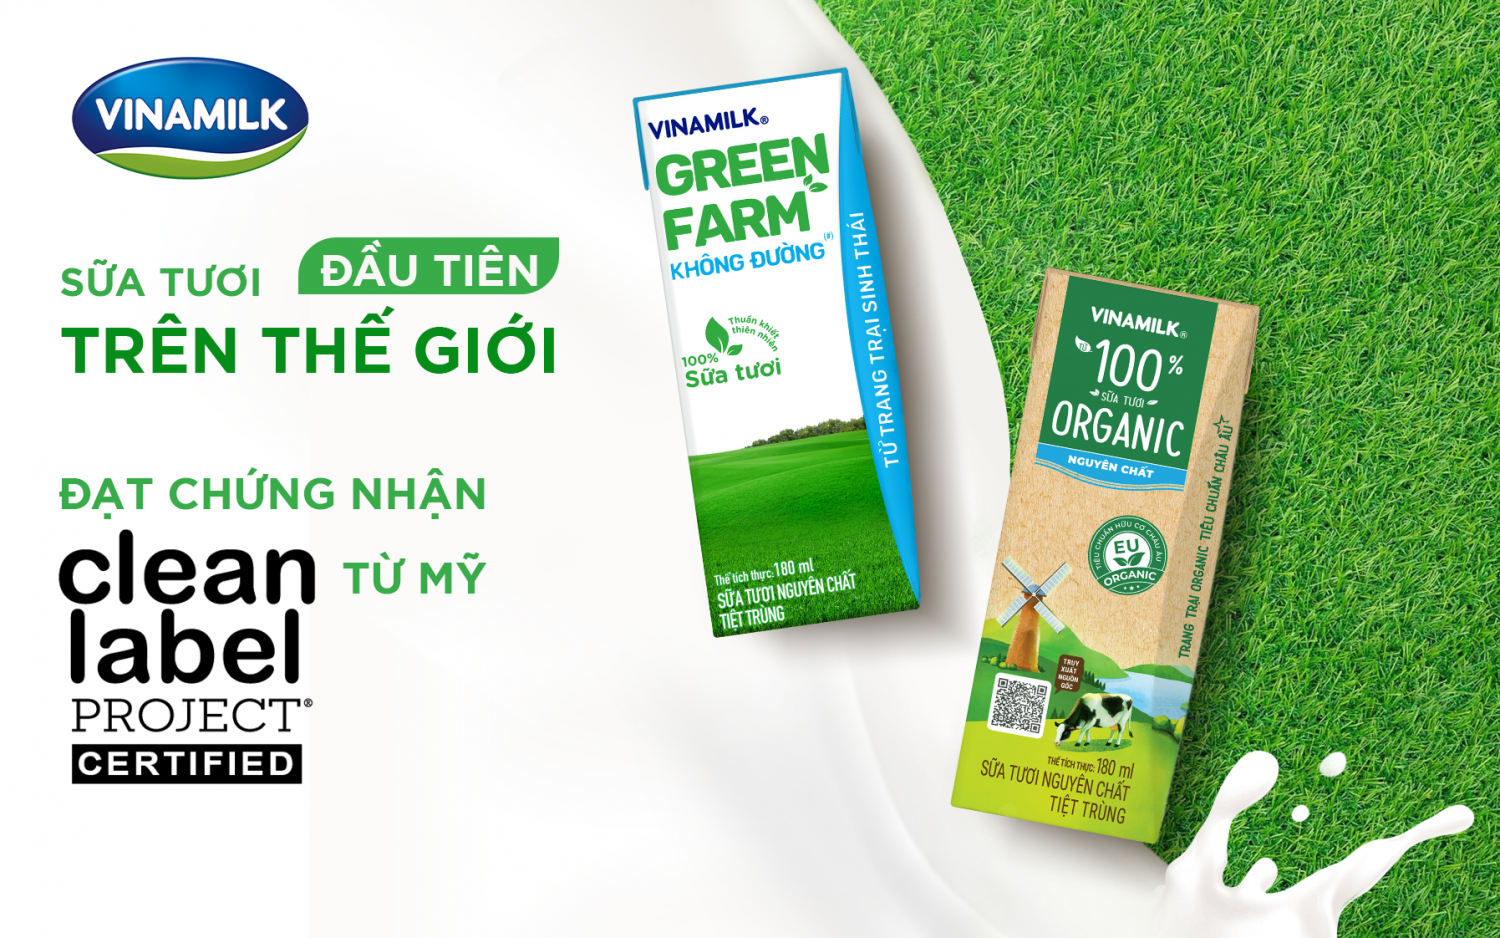 Vinamilk Green Farm & Vinamilk 100% Organic là hai sản phẩm sữa tươi đầu tiên trên thế giới đạt được chứng nhận của tổ chức Clean Label Project từ Mỹ.